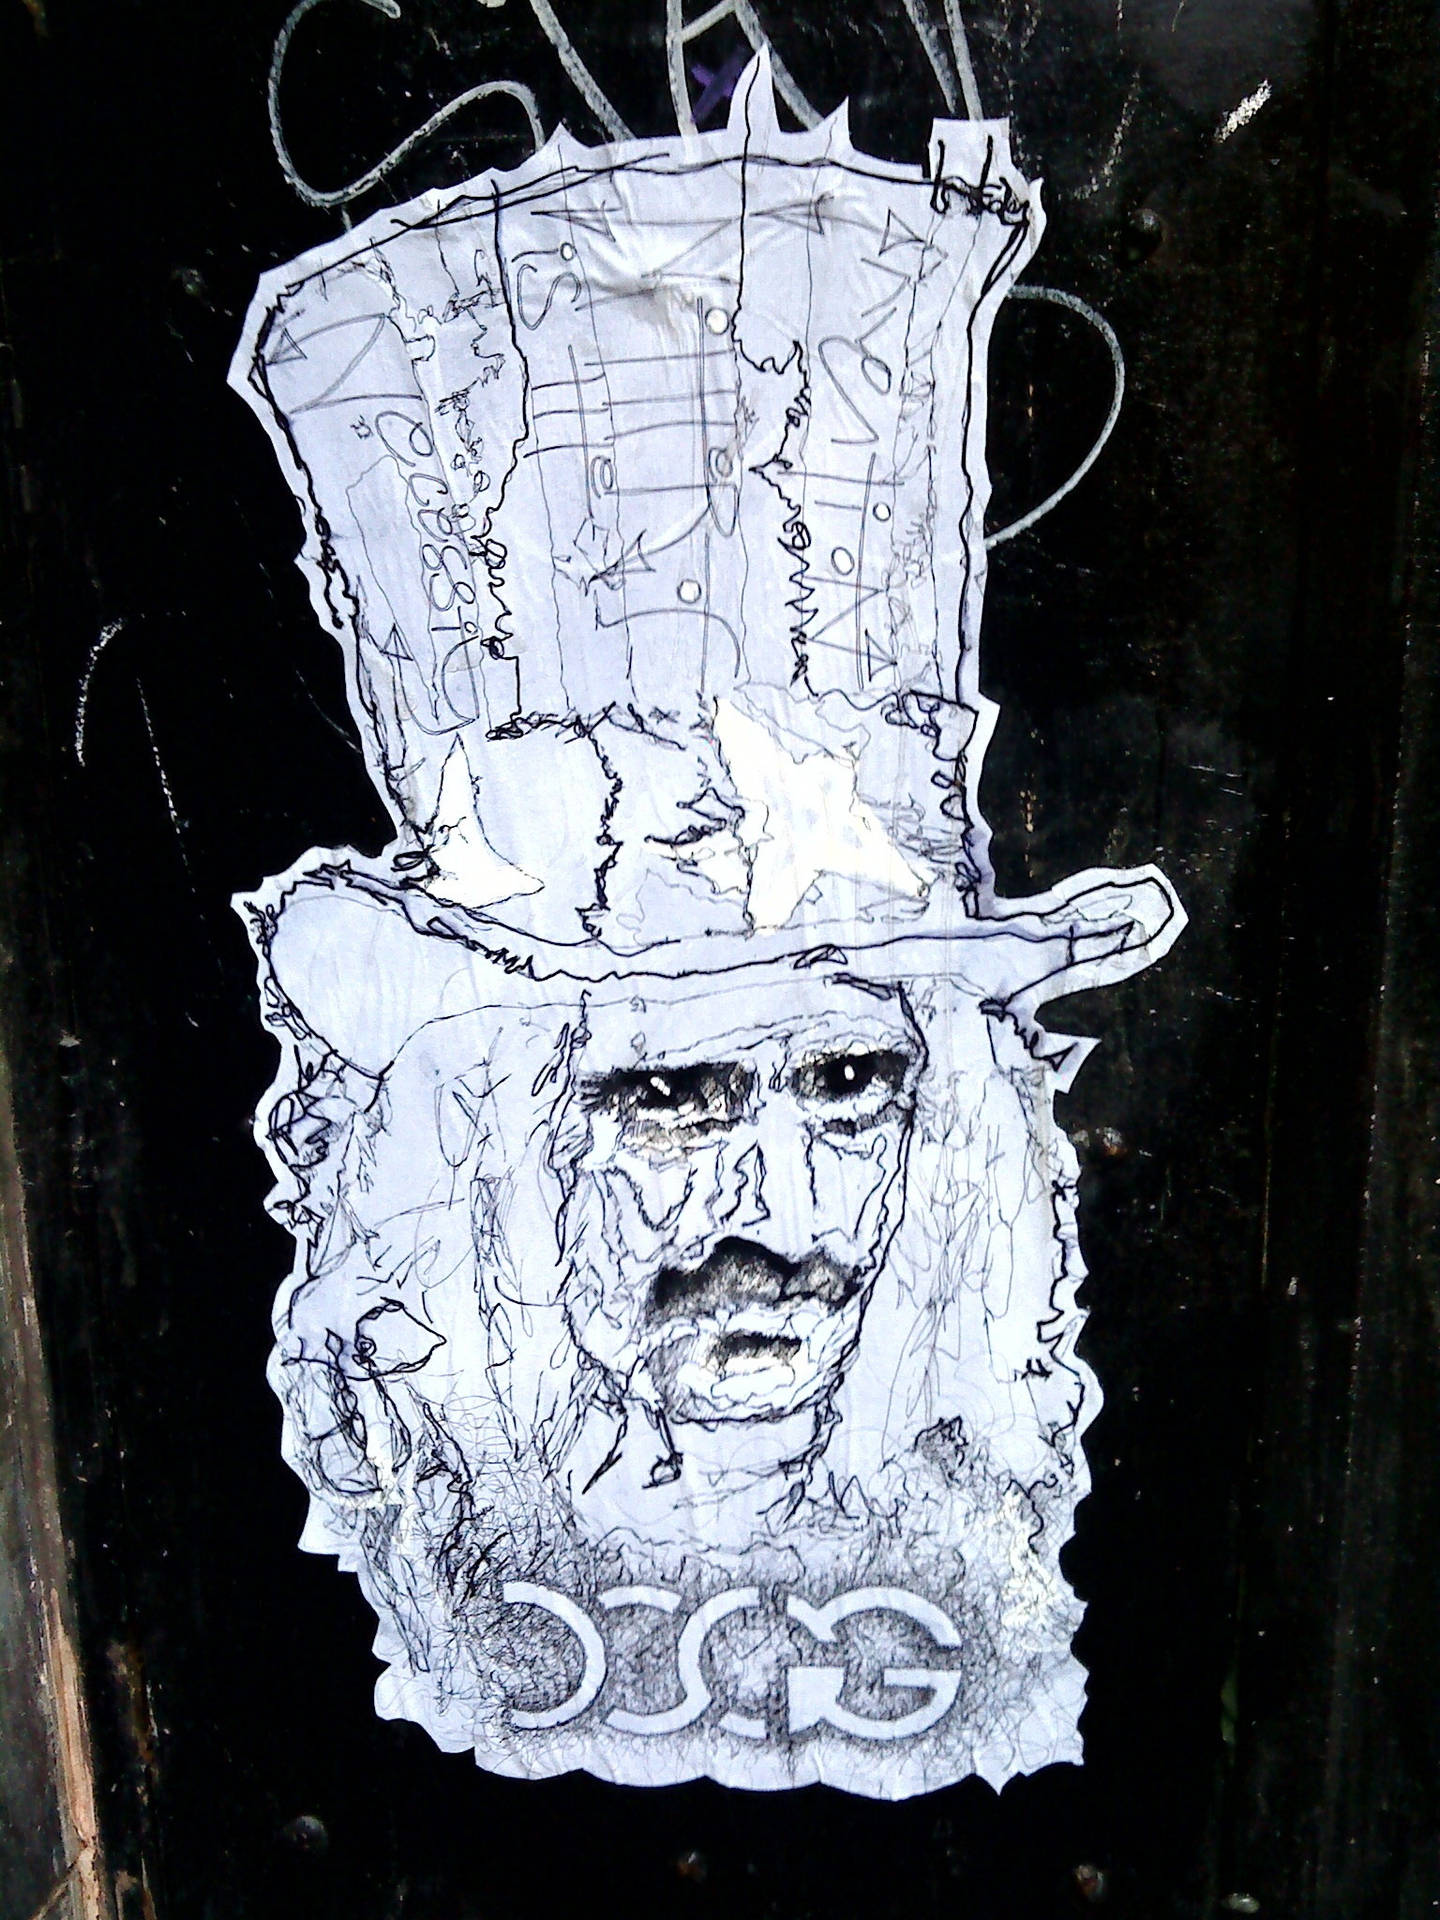 Frank Zappa Ink Doodle løber vildt hen over din skærm. Wallpaper